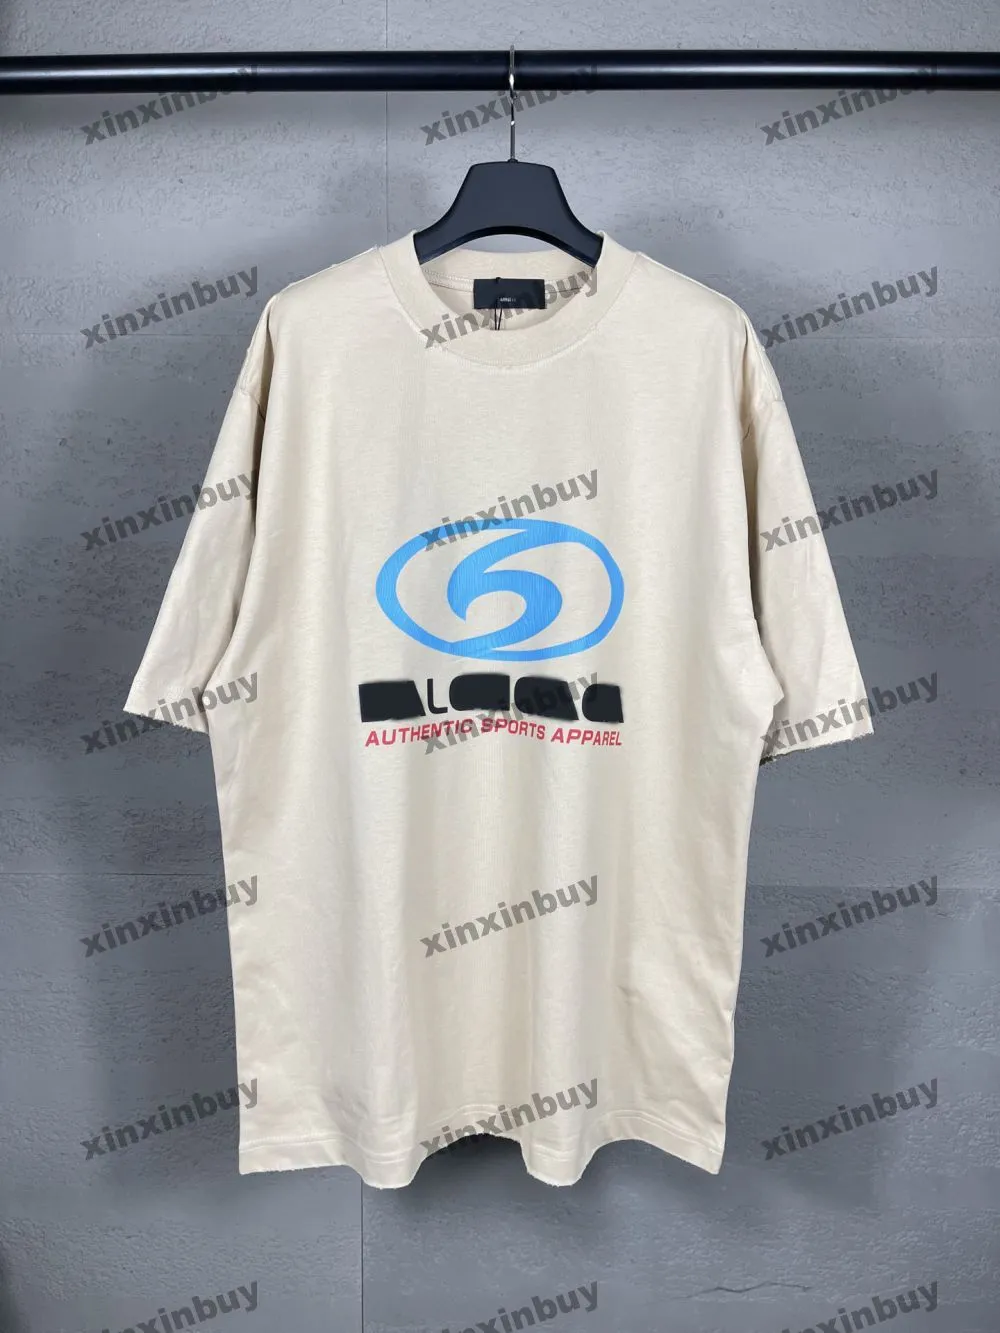 Xinxinbuy Mannen designer Tee t-shirt Parijs golf vernietigd brief print korte mouw katoen vrouwen Zwart wit blauw grijs rood XS-2XL